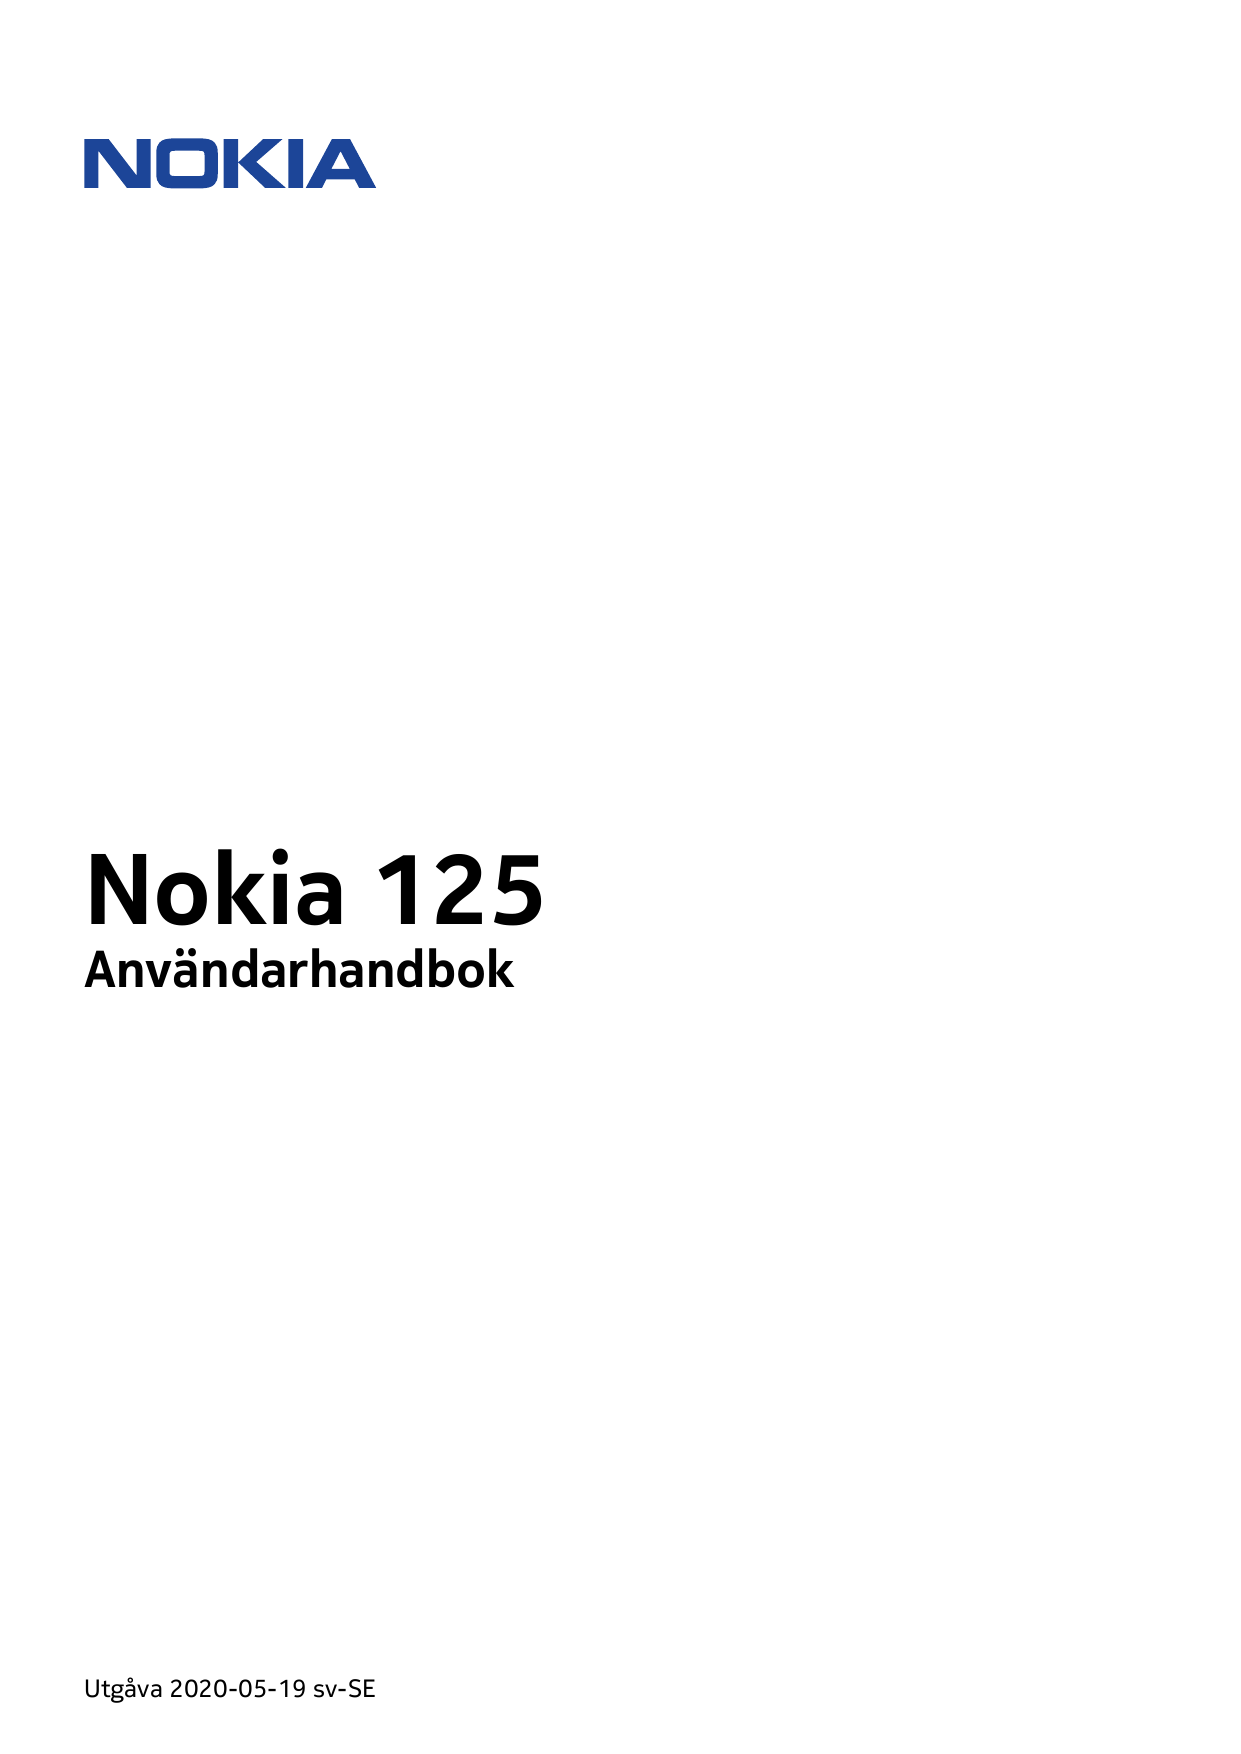 Nokia 125AnvändarhandbokUtgåva 2020-05-19 sv-SE